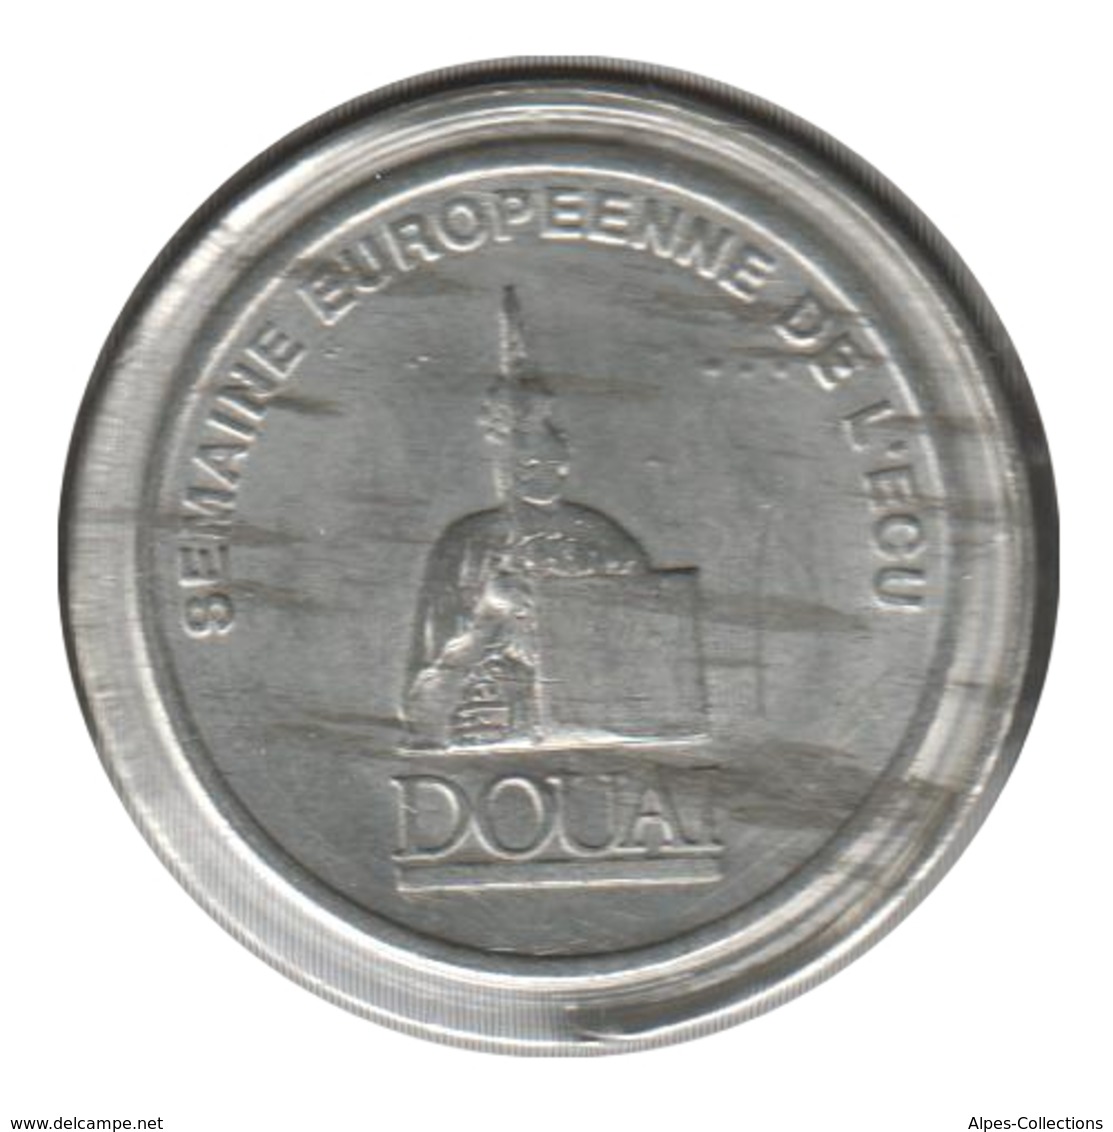 DOUAI - EC0010.3 - 1 ECU DES VILLES - Réf: NR - 1991 - Euros Des Villes